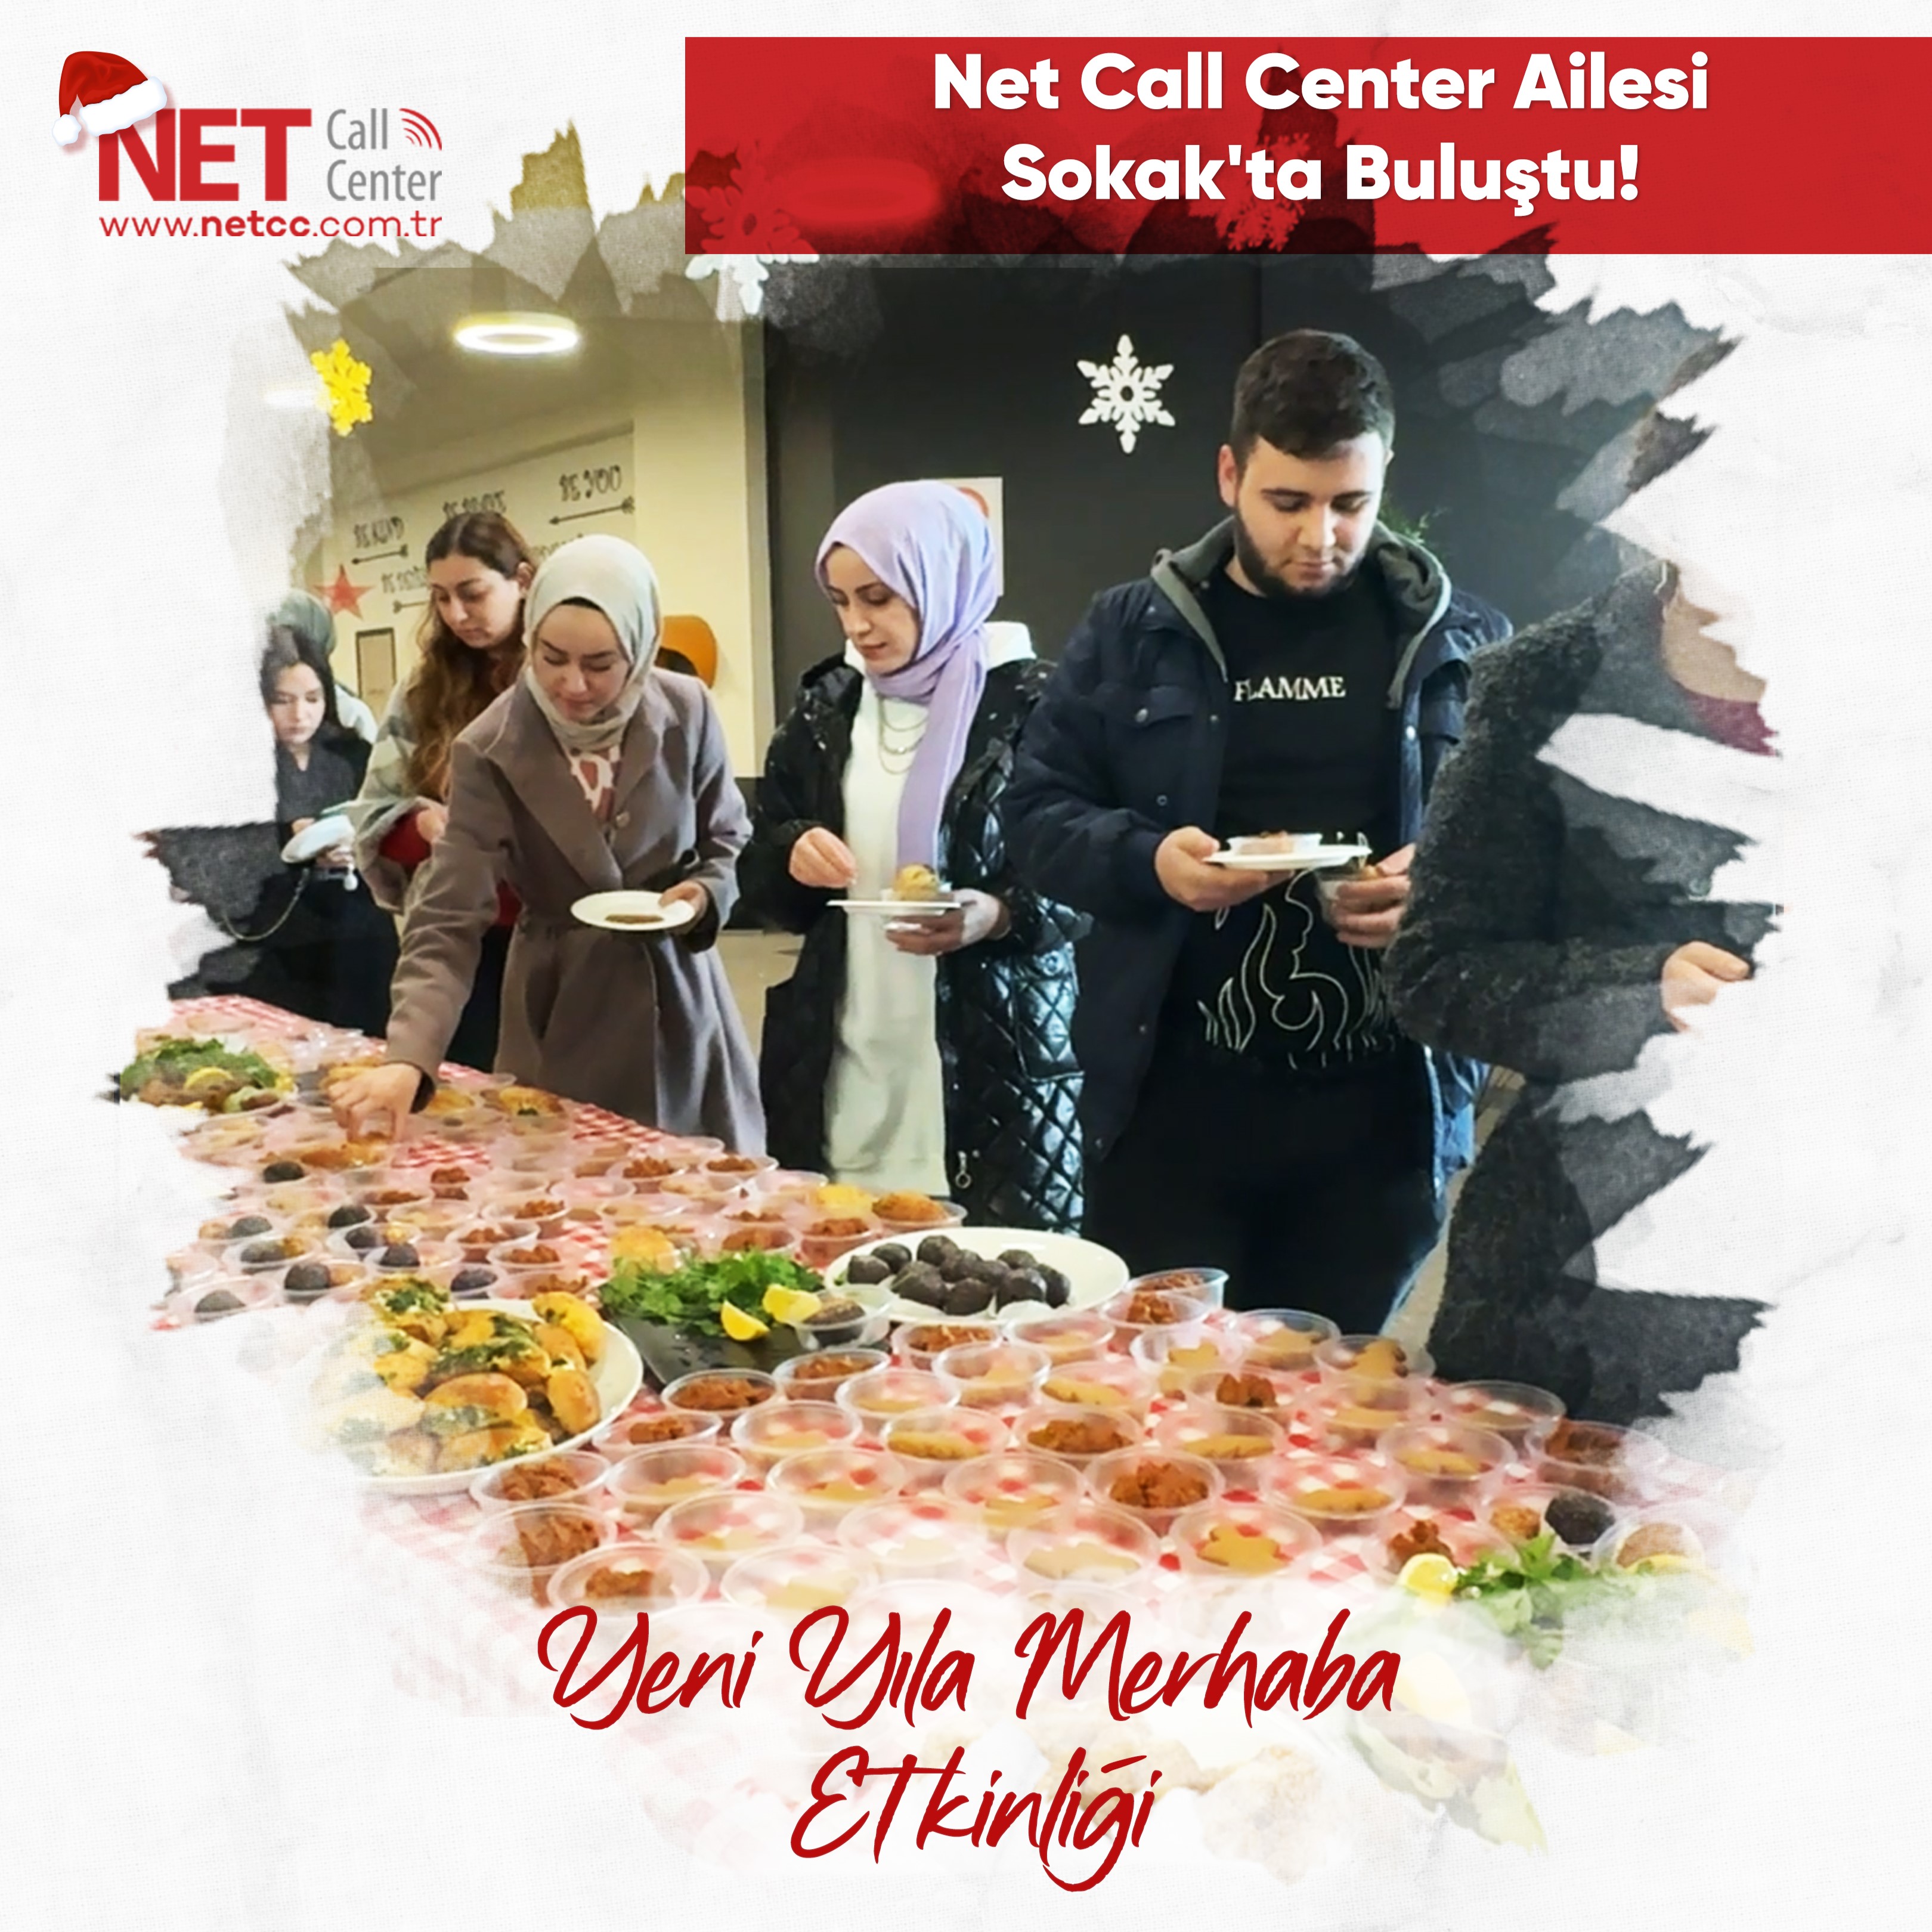 Net Call Center - Net Call Center Ailesi Sokak'ta Buluştu: Yeni Yıla Merhaba Etkinliği